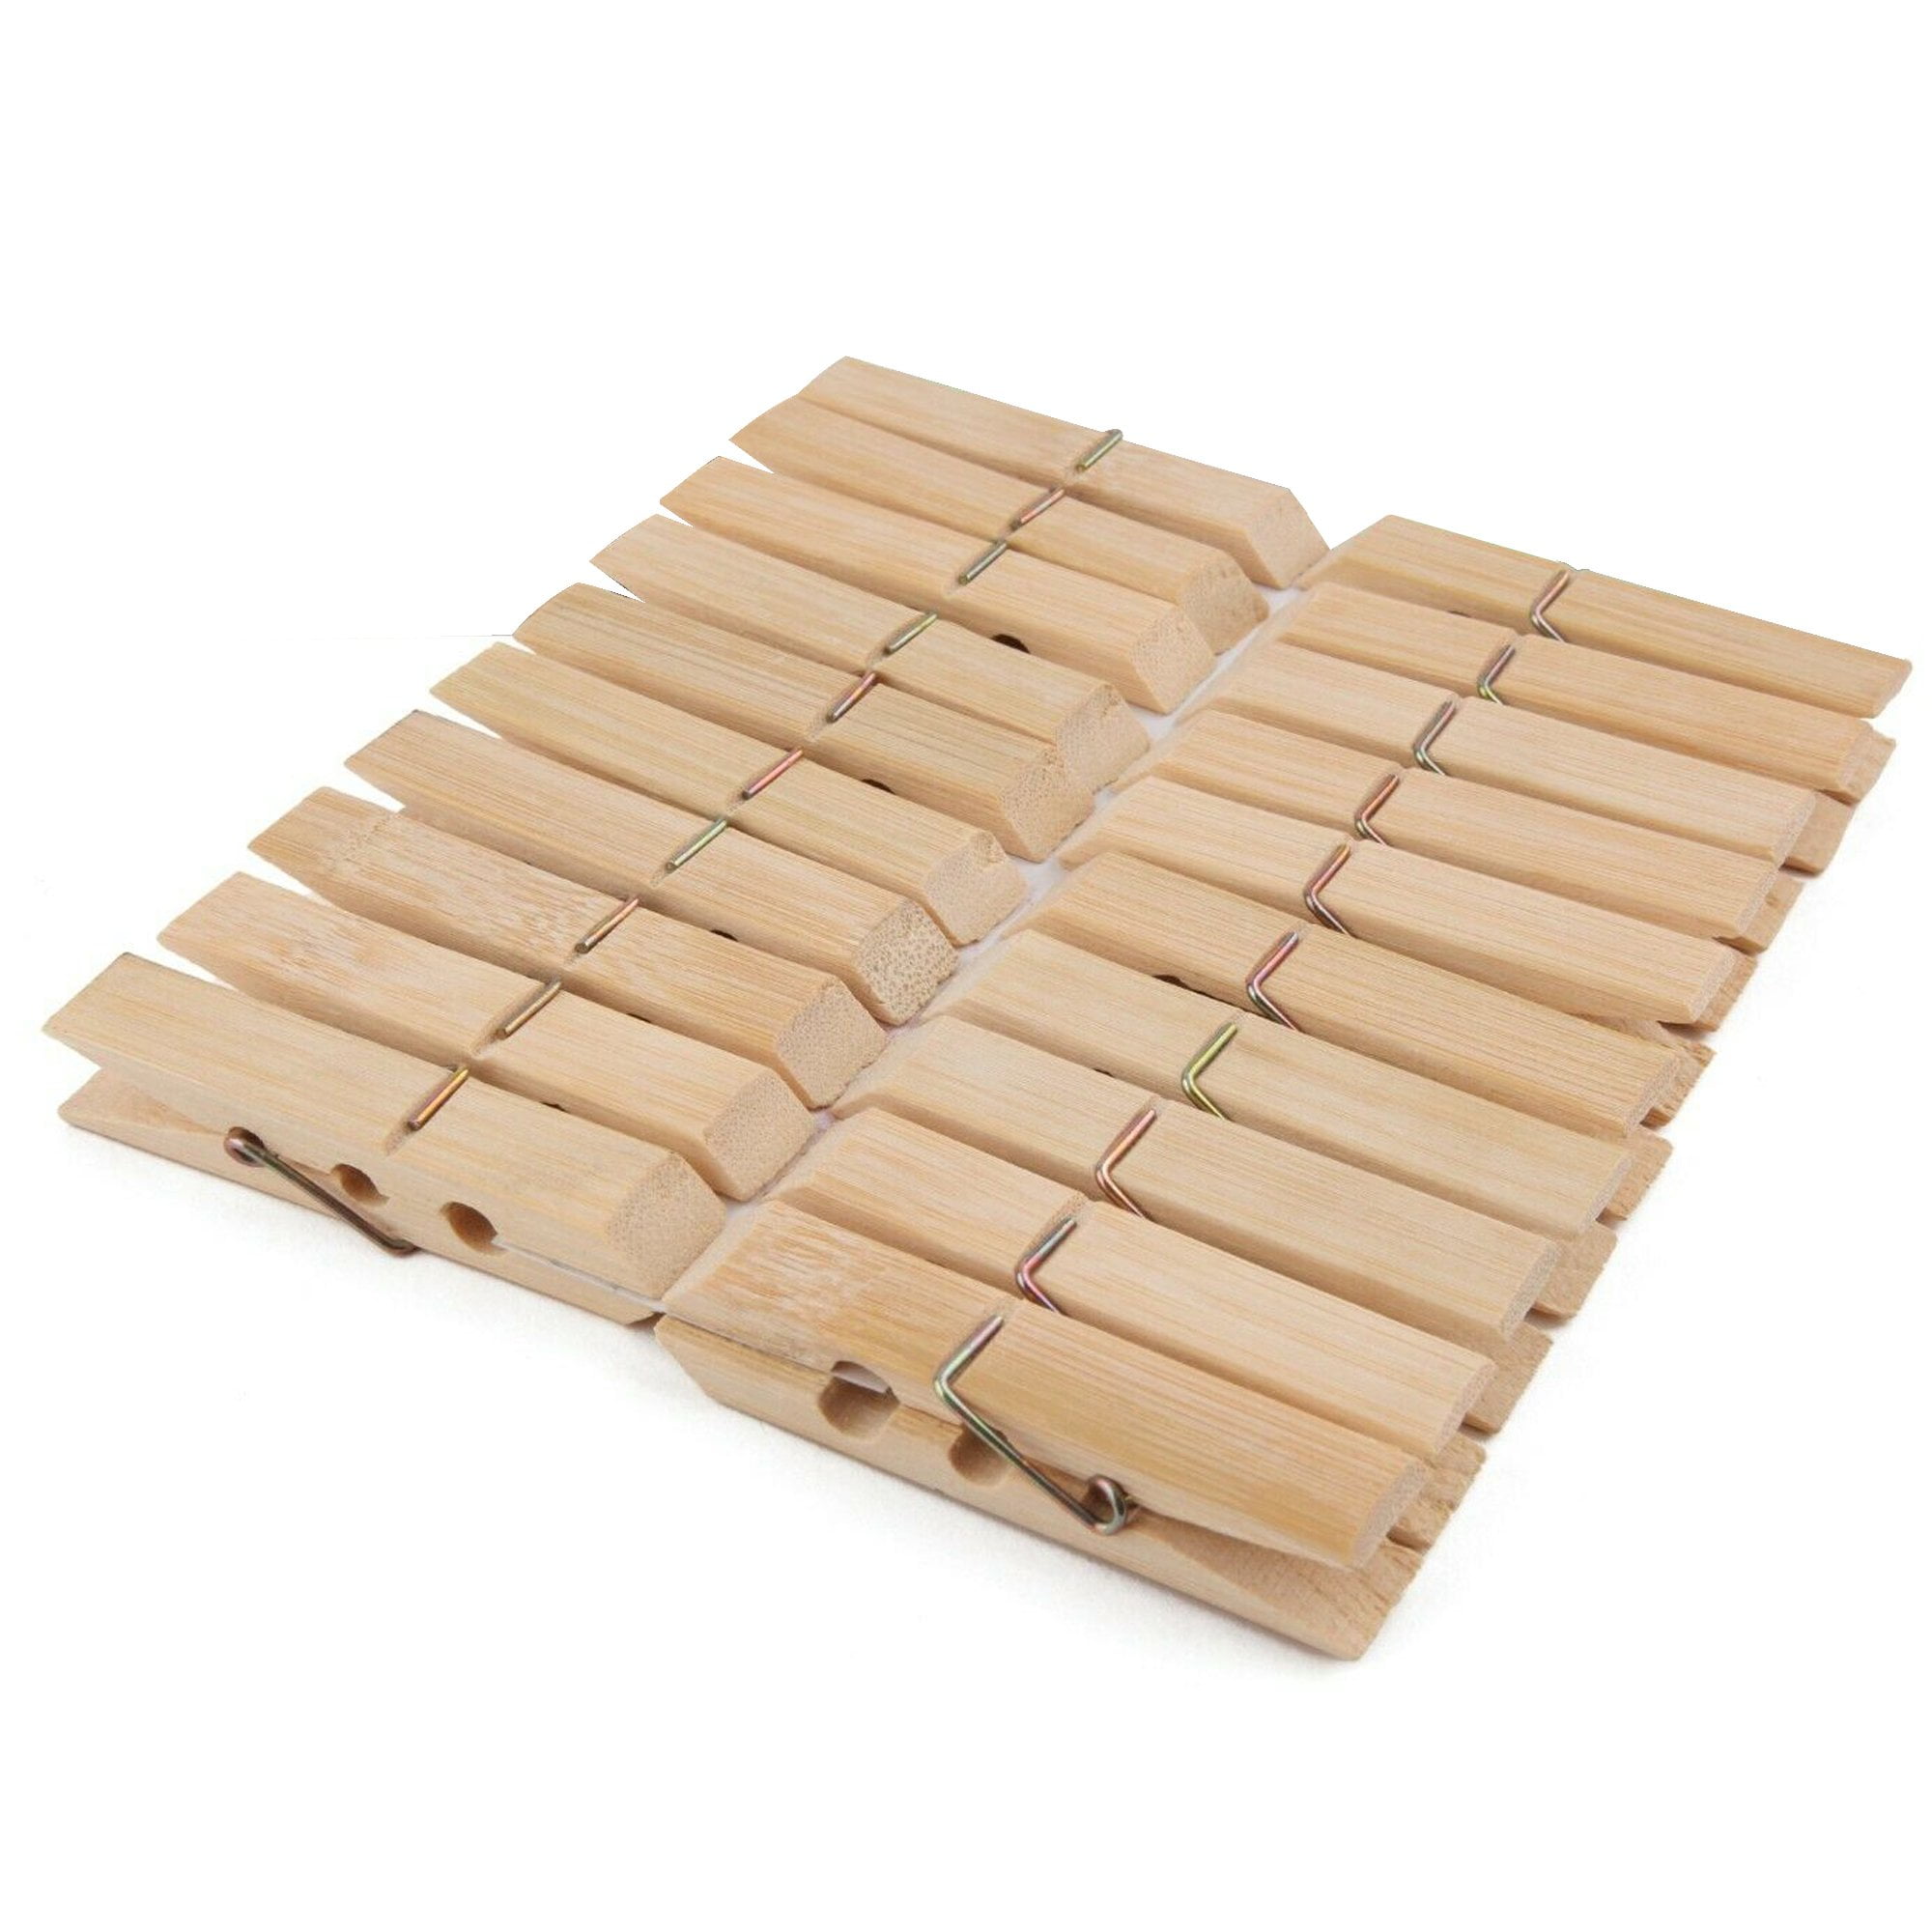 Natural Wooden Mini Clothespins. (50 pcs. per unit) 1 x 1/4 x 1/8